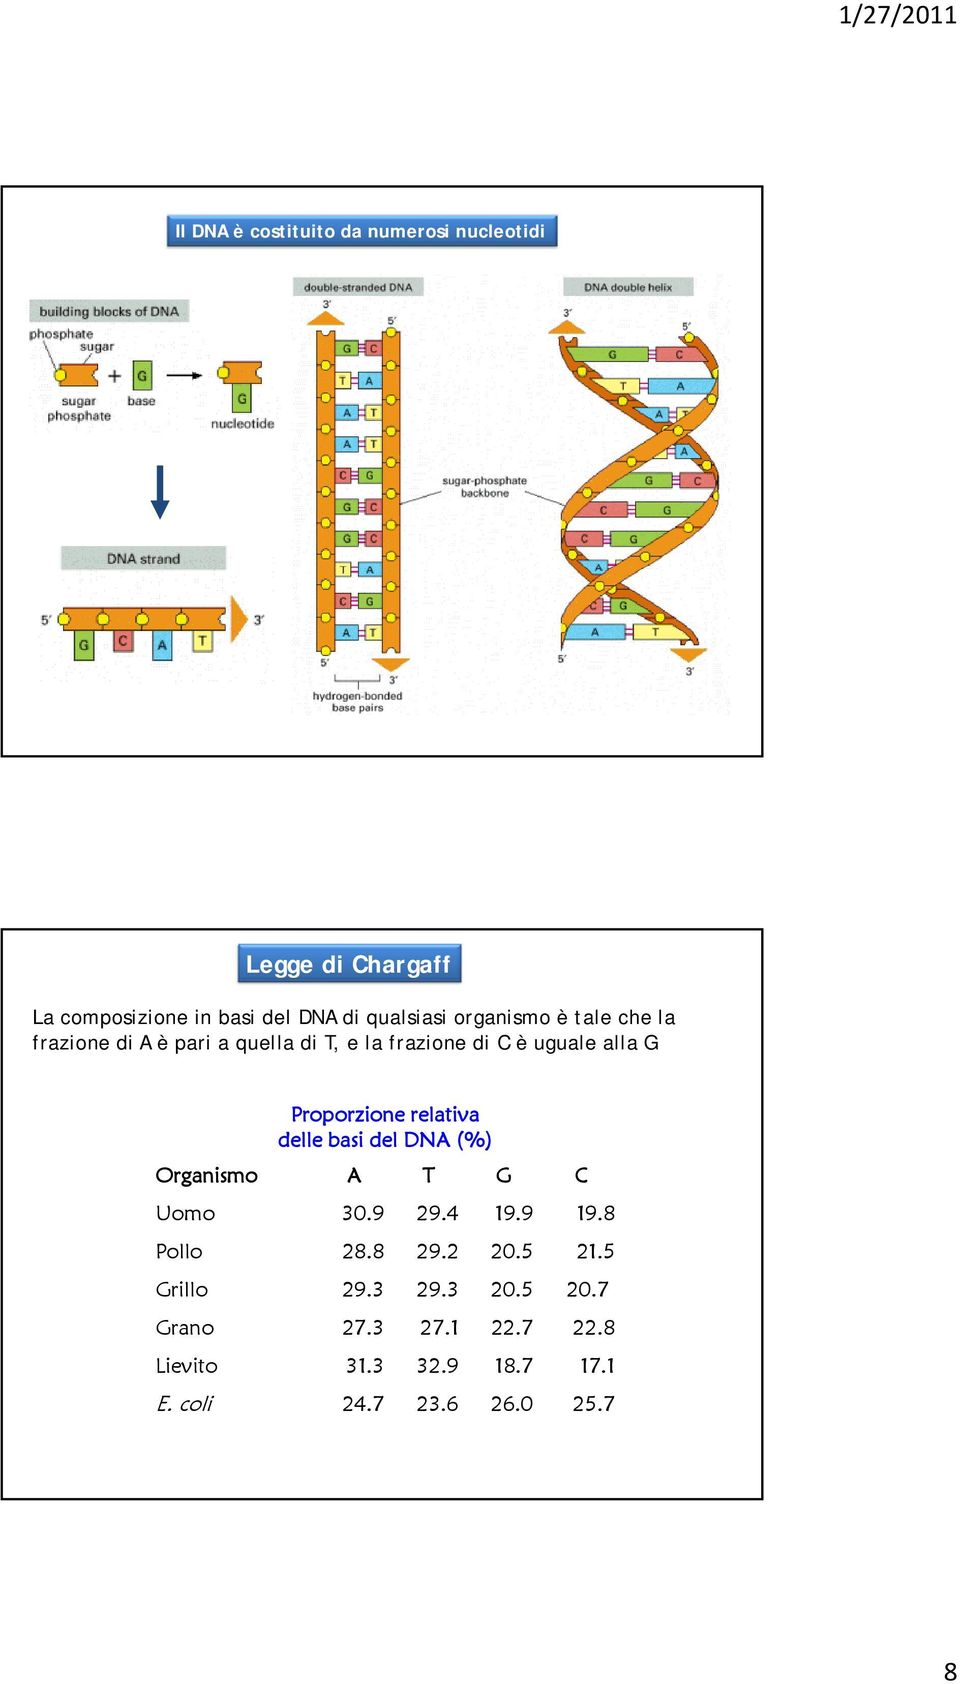 Proporzione relativa delle basi del DNA (%) Organismo A T G C Uomo 30.9 29.4 19.9 19.8 Pollo 28.8 29.2 20.